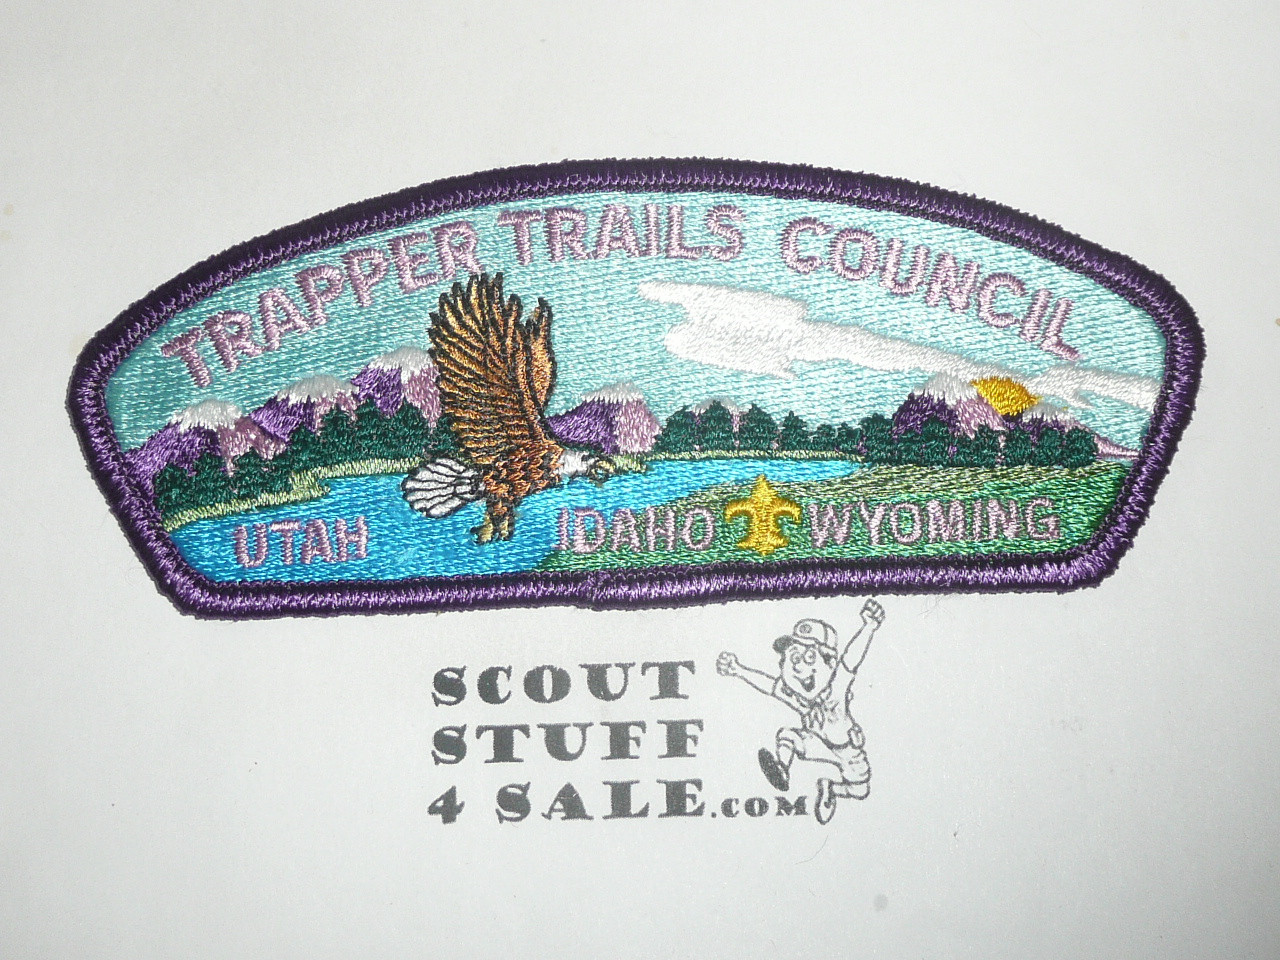 Trapper Trails Council s4 CSP - Scout